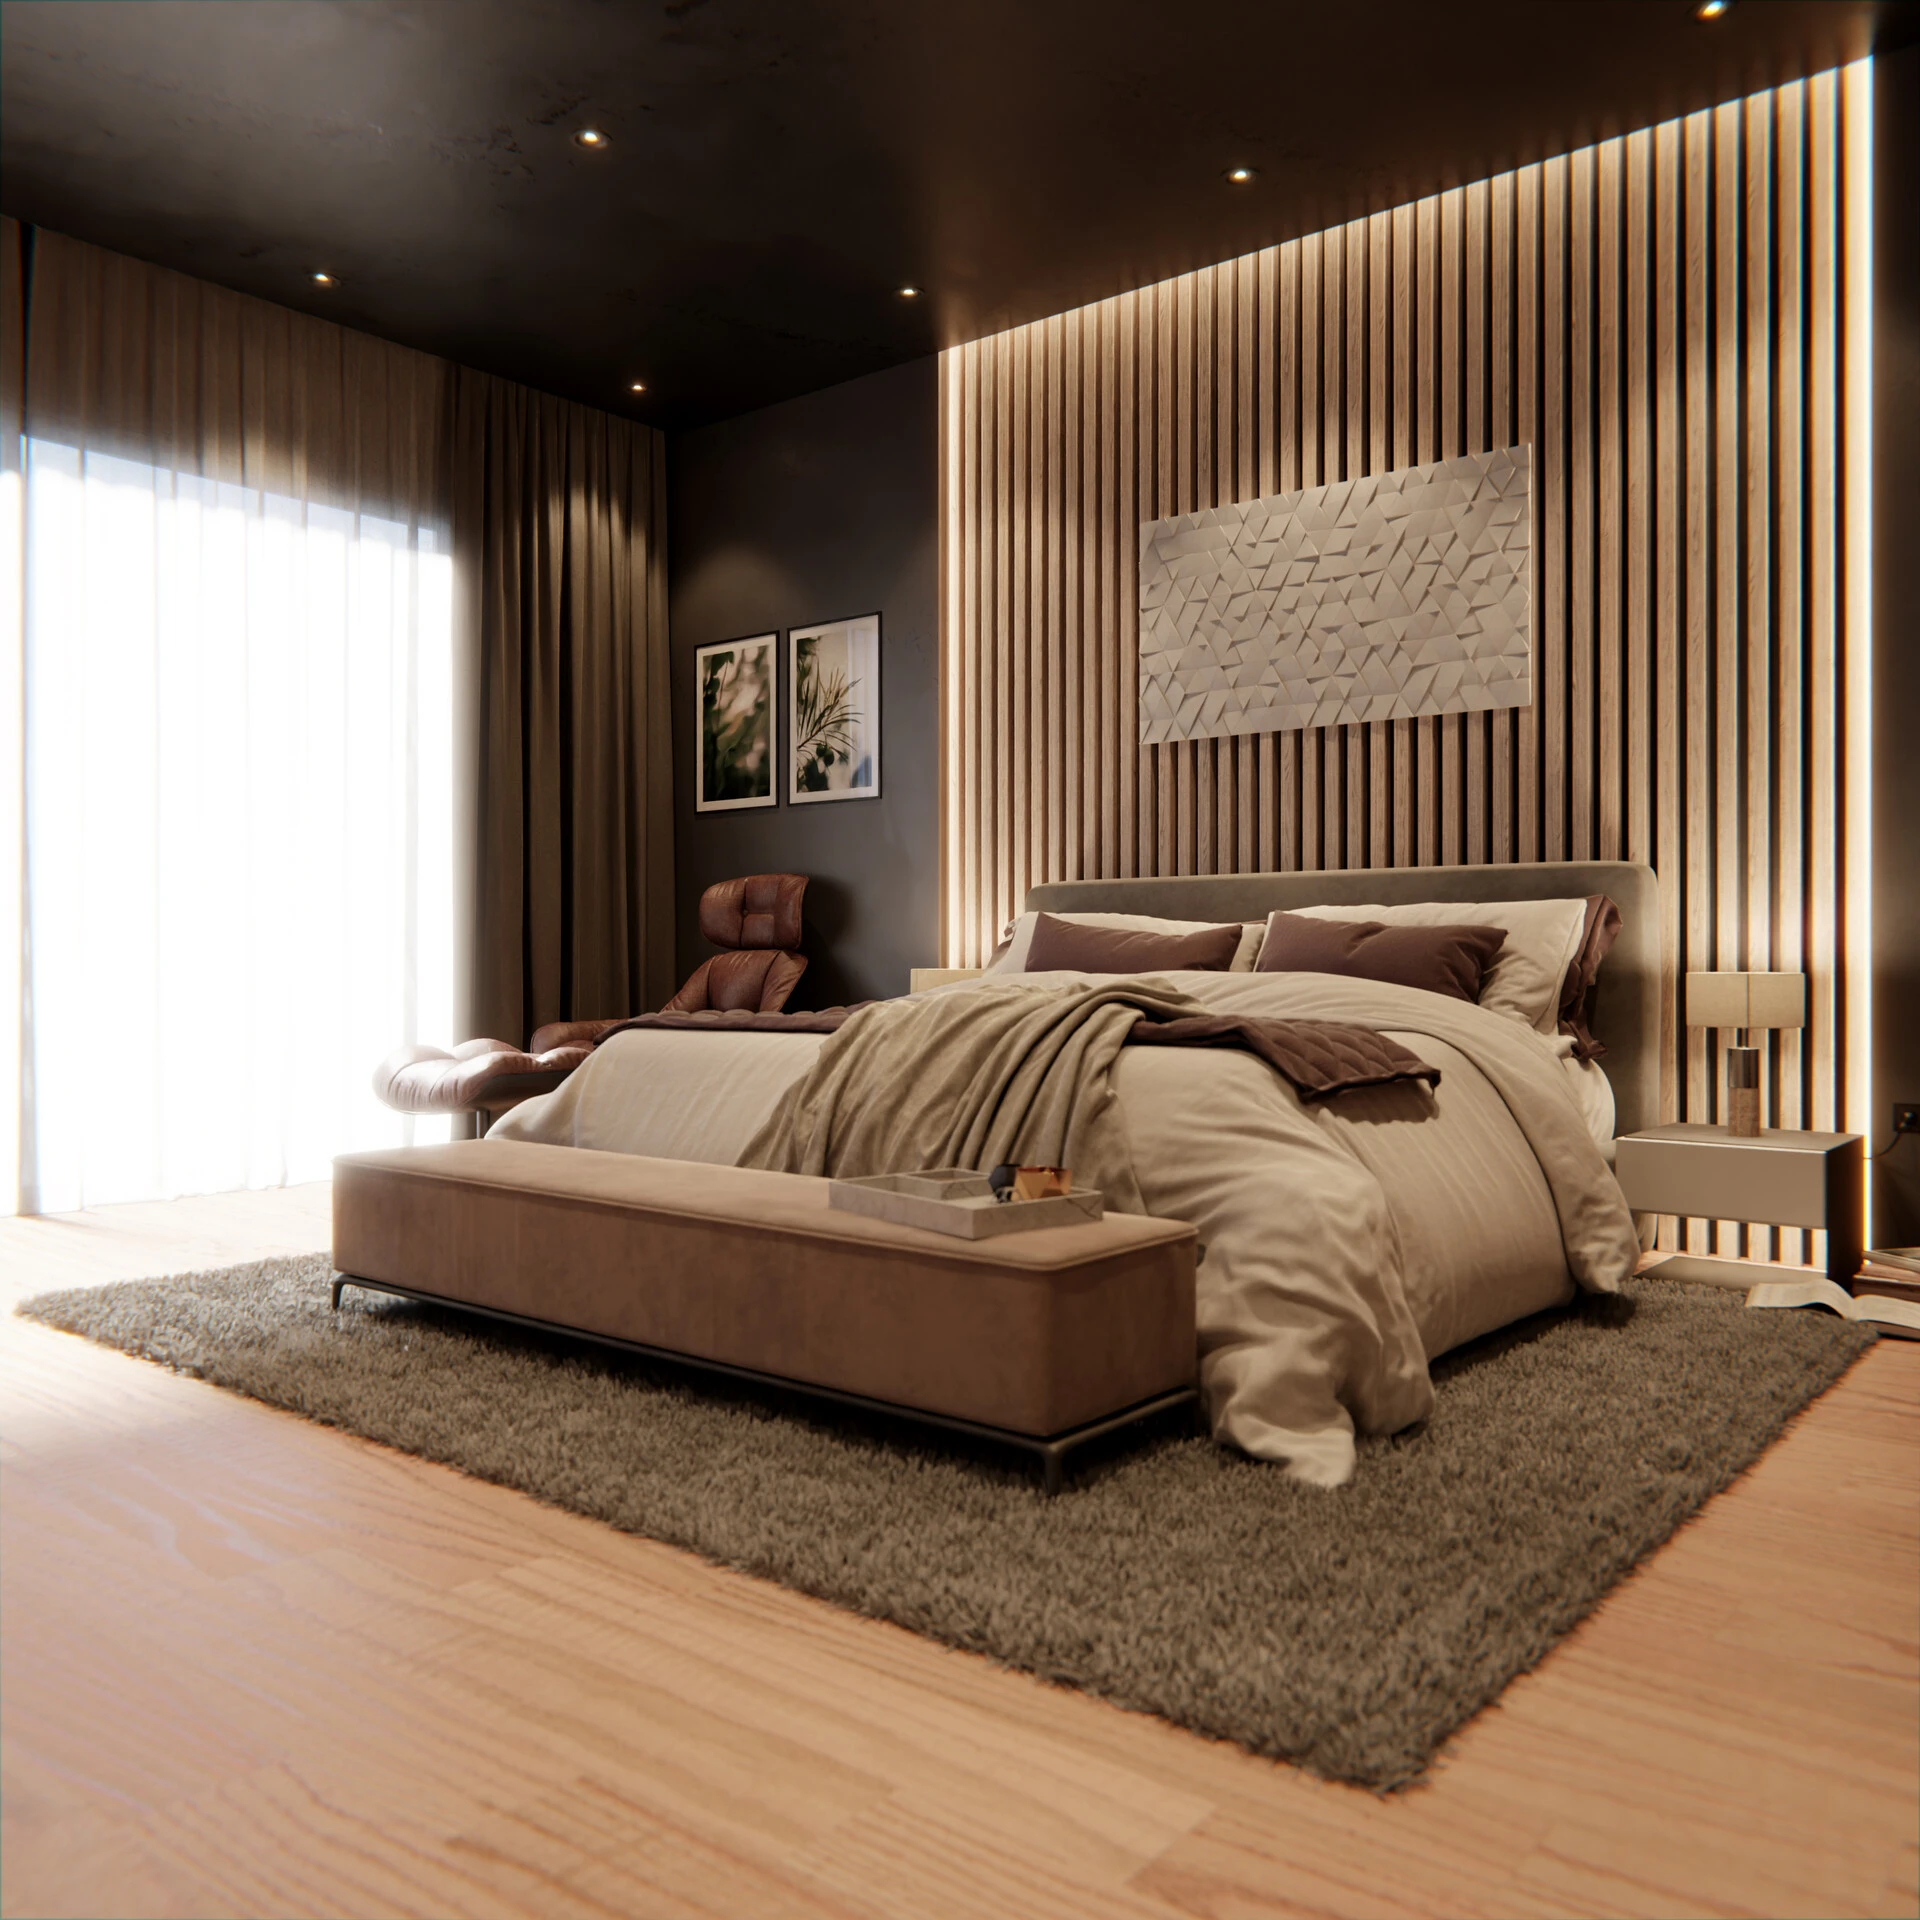 165-mario-abou-samra-bedroom-design-final-render-still-02-copy-17070604682154.jpg